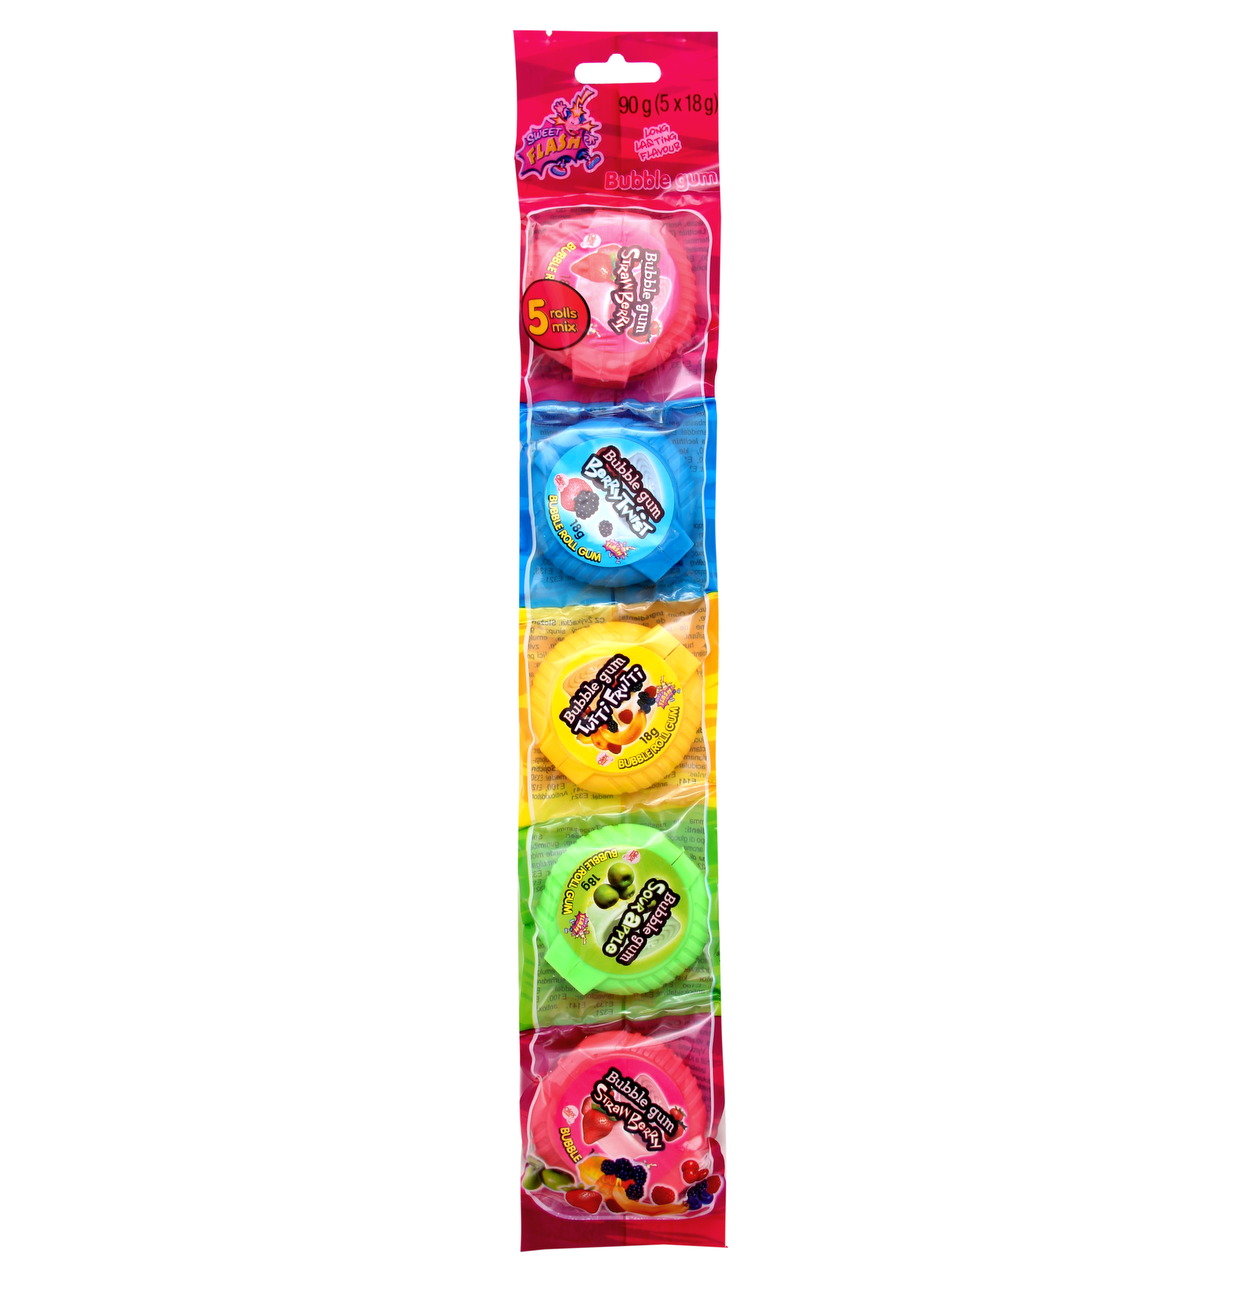 Bubble gum Rolls 5-pack (24 x 90g)